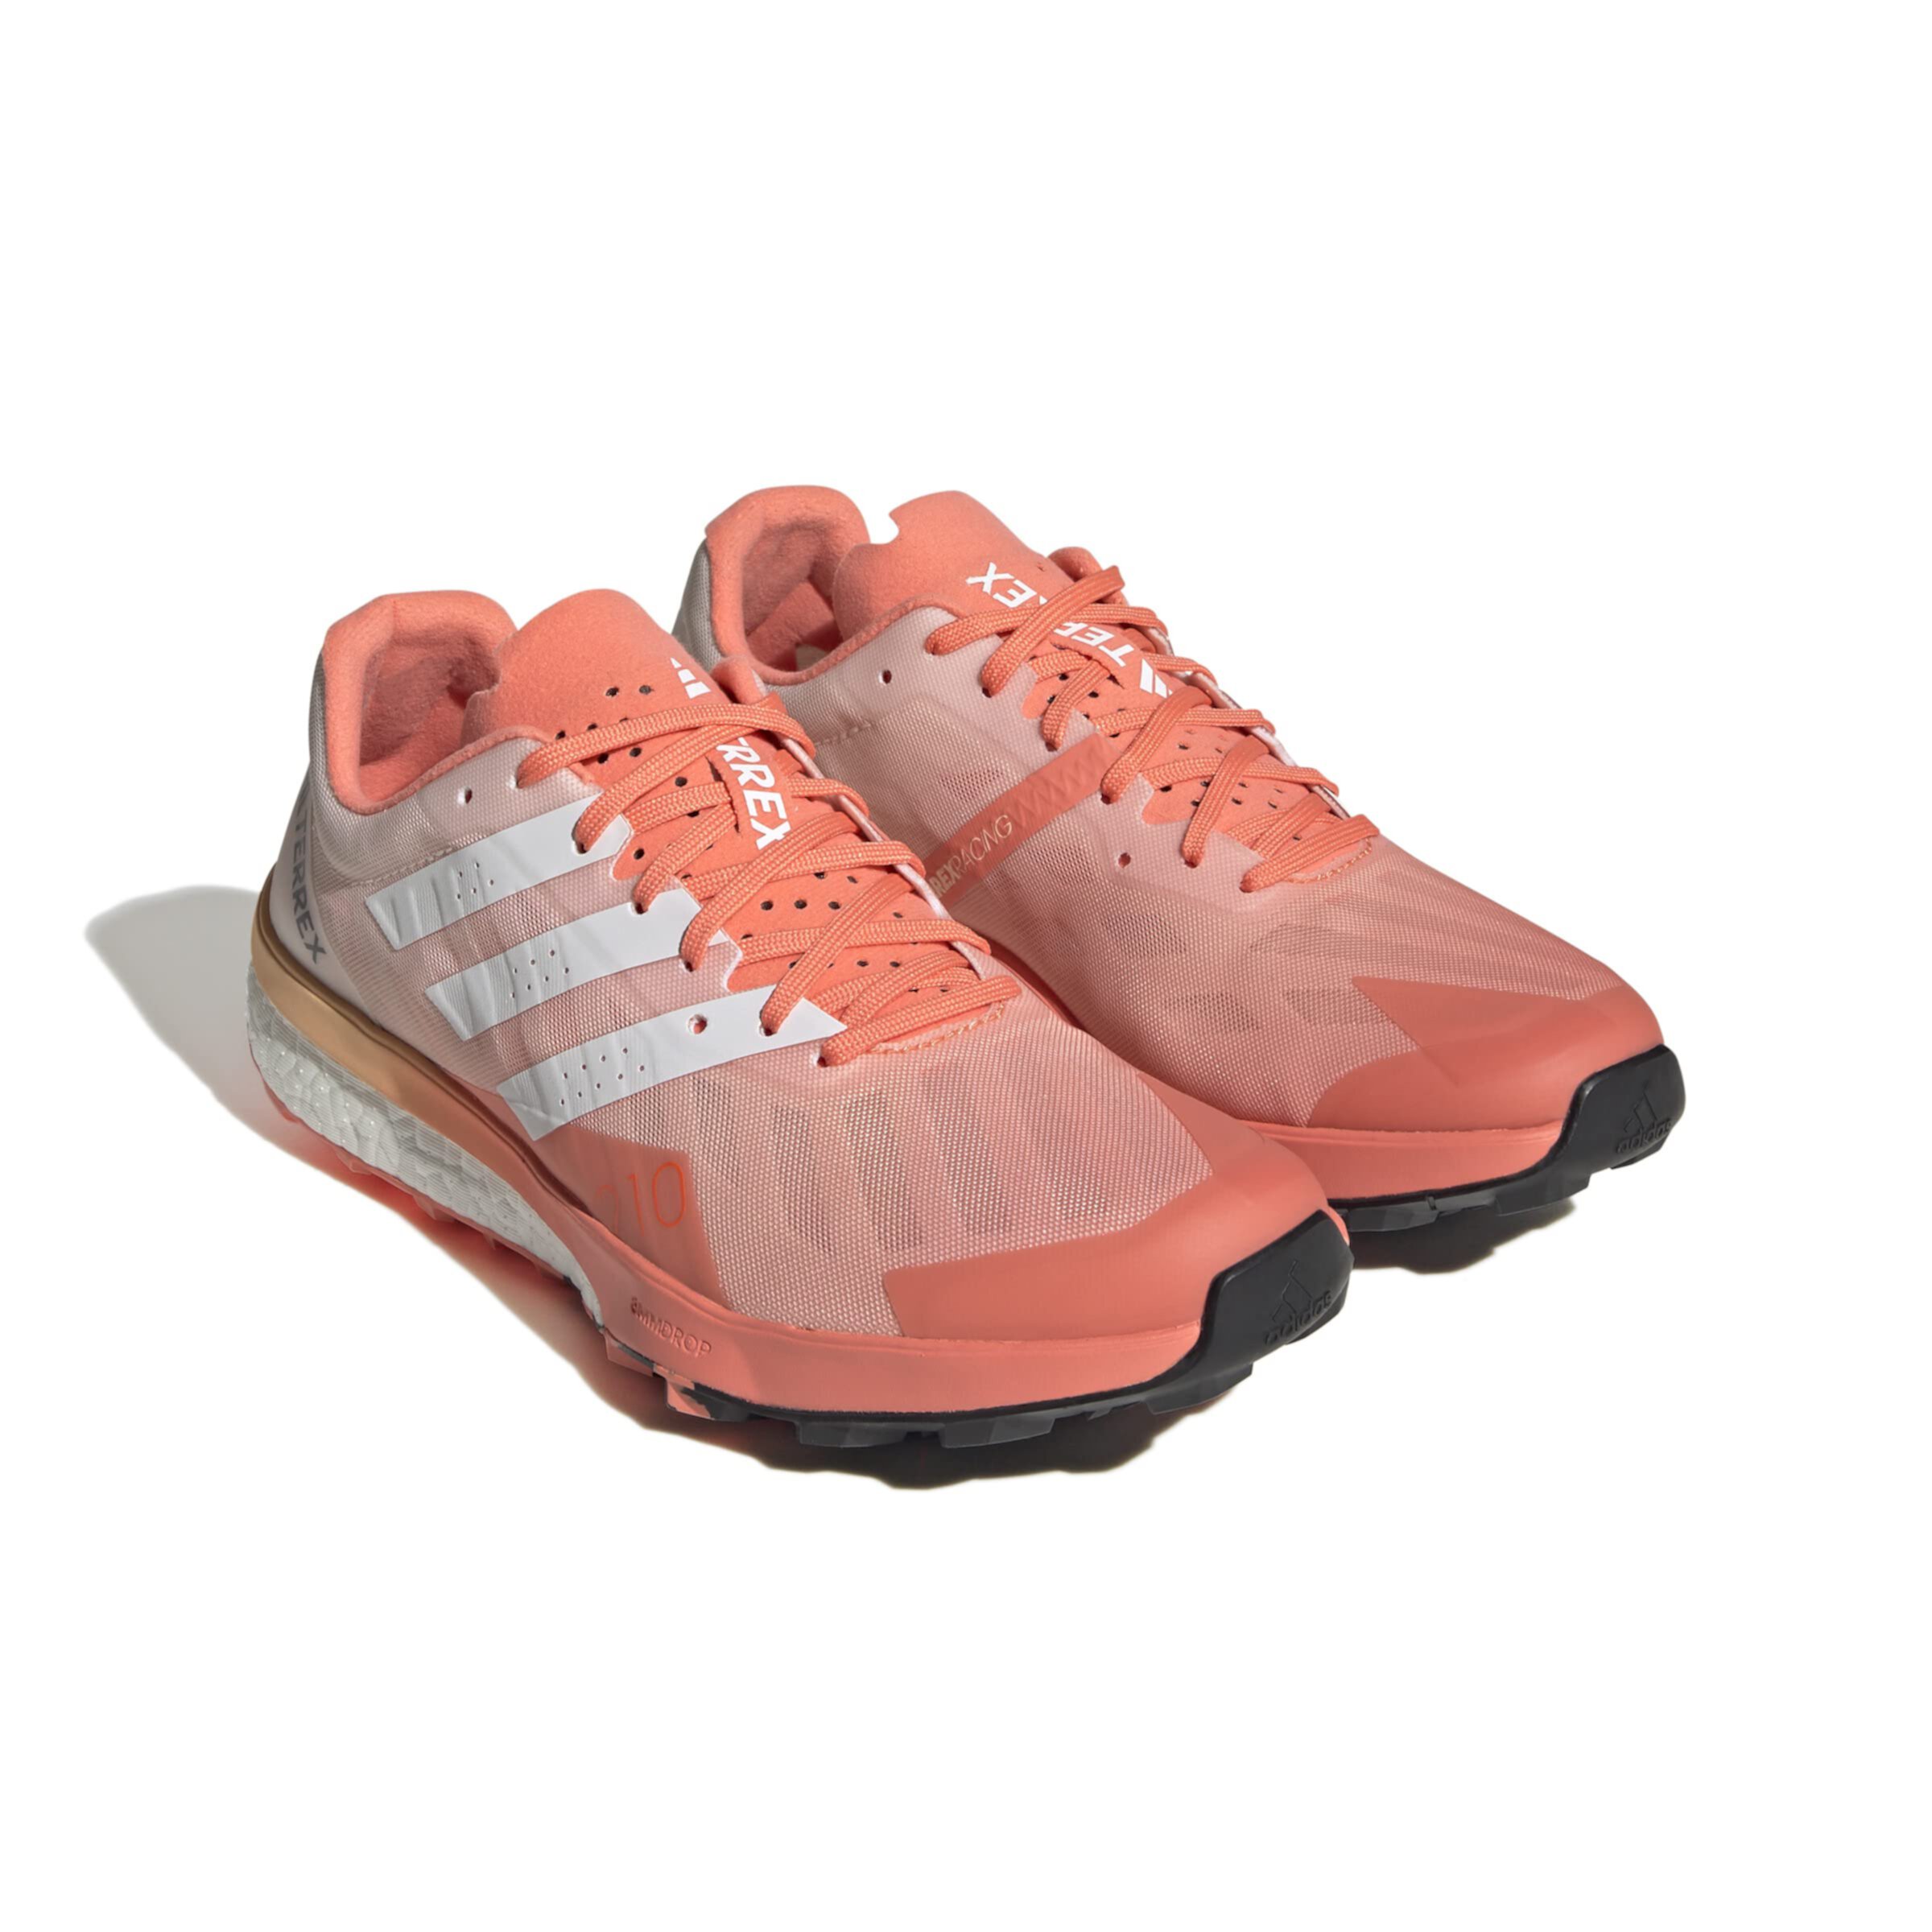 Террекс Спид Ультра от Adidas для женщин - беговая обувь Adidas